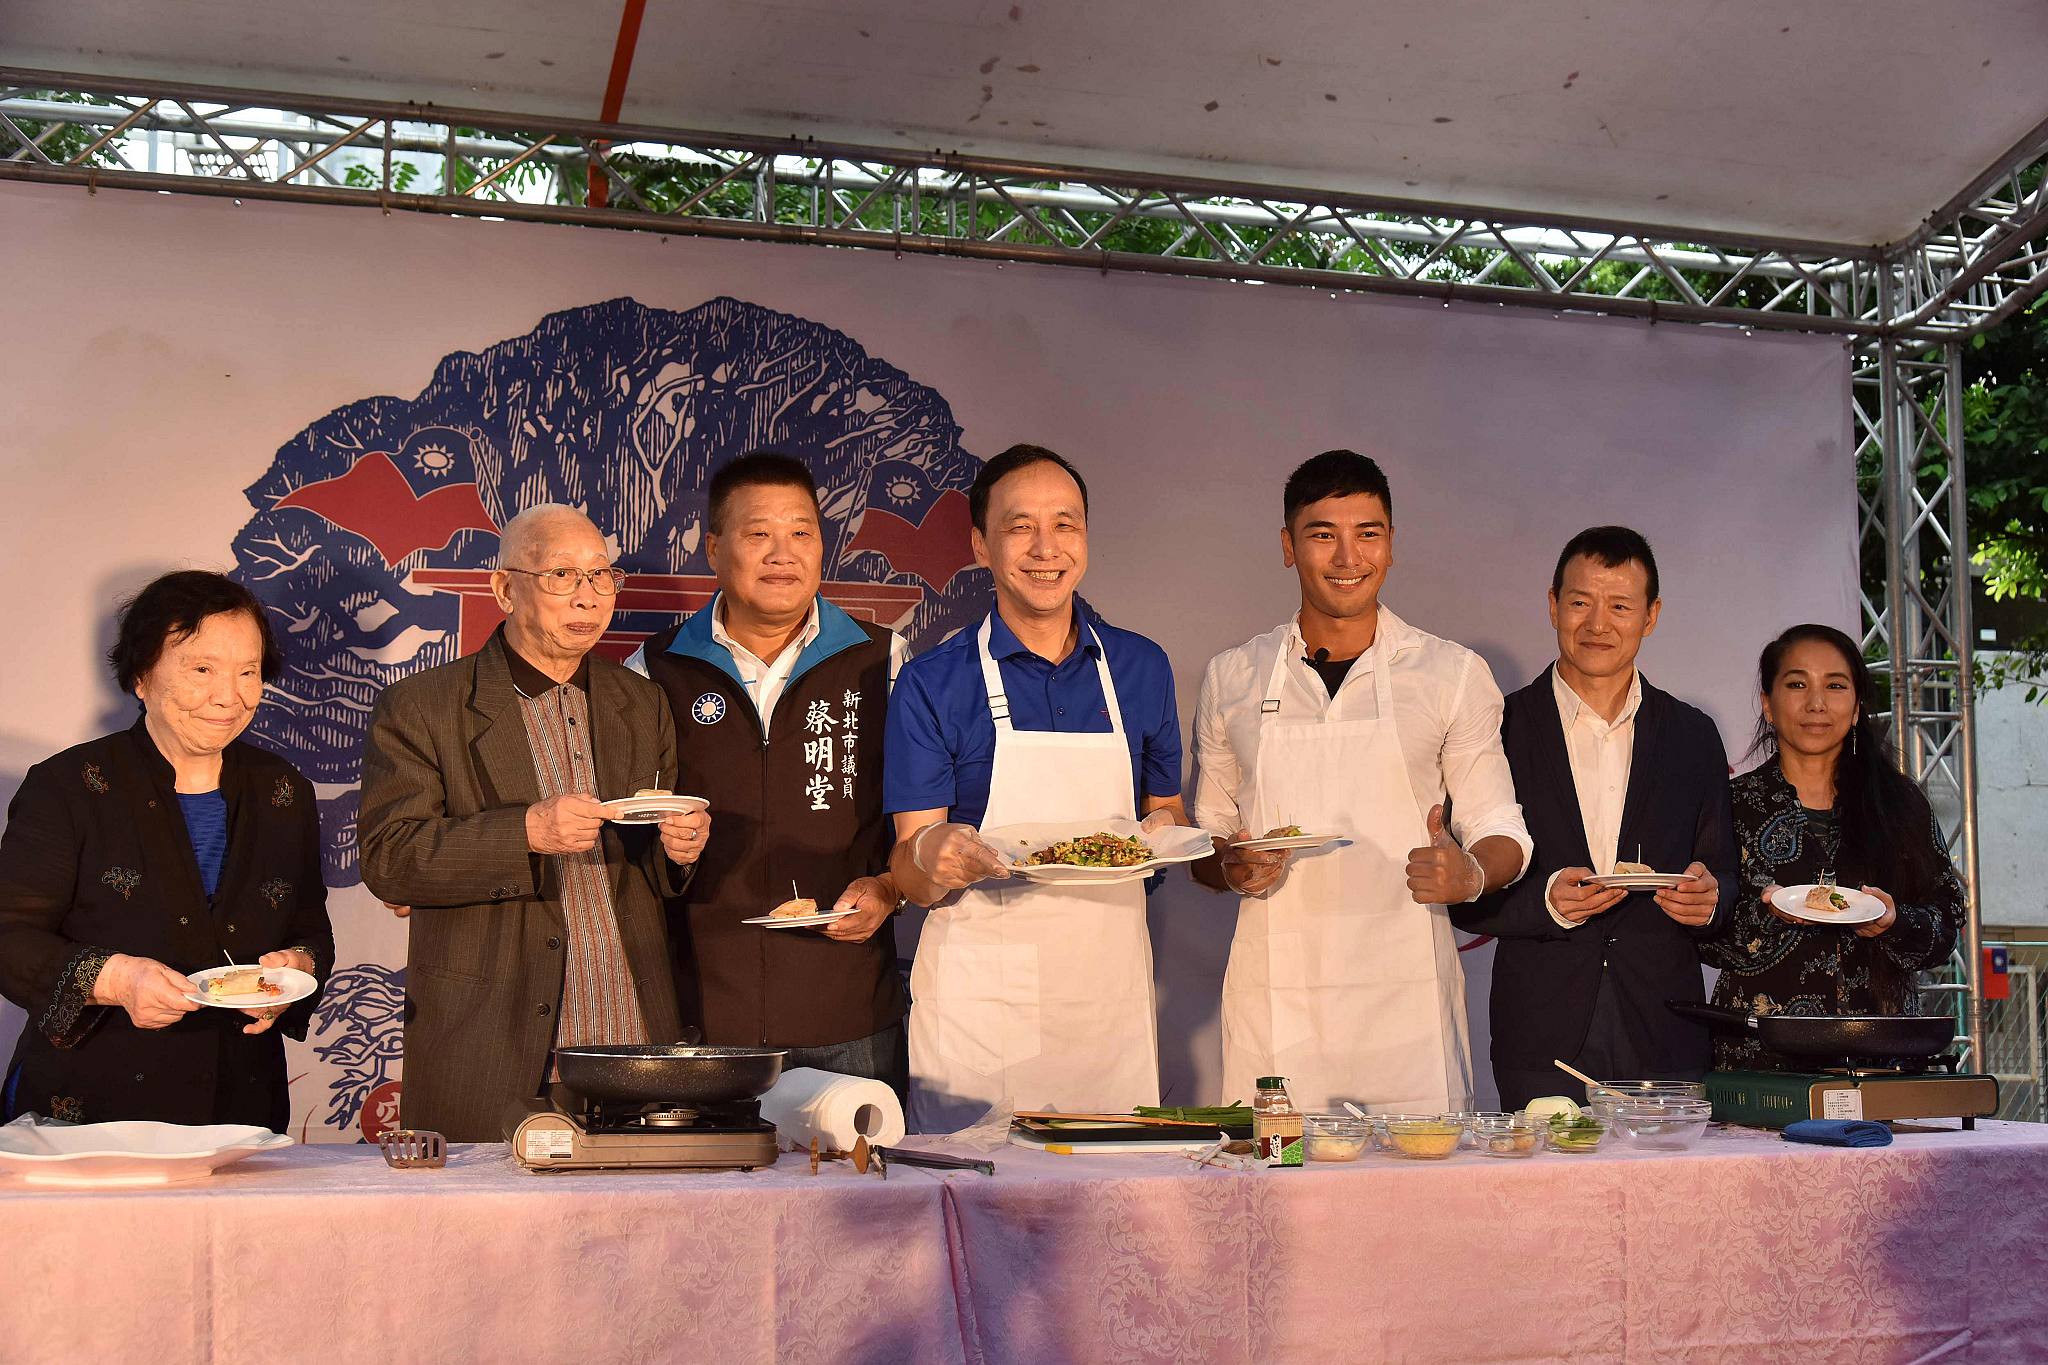 朱市長與知名藝人羅平共同烹調創意眷村料理